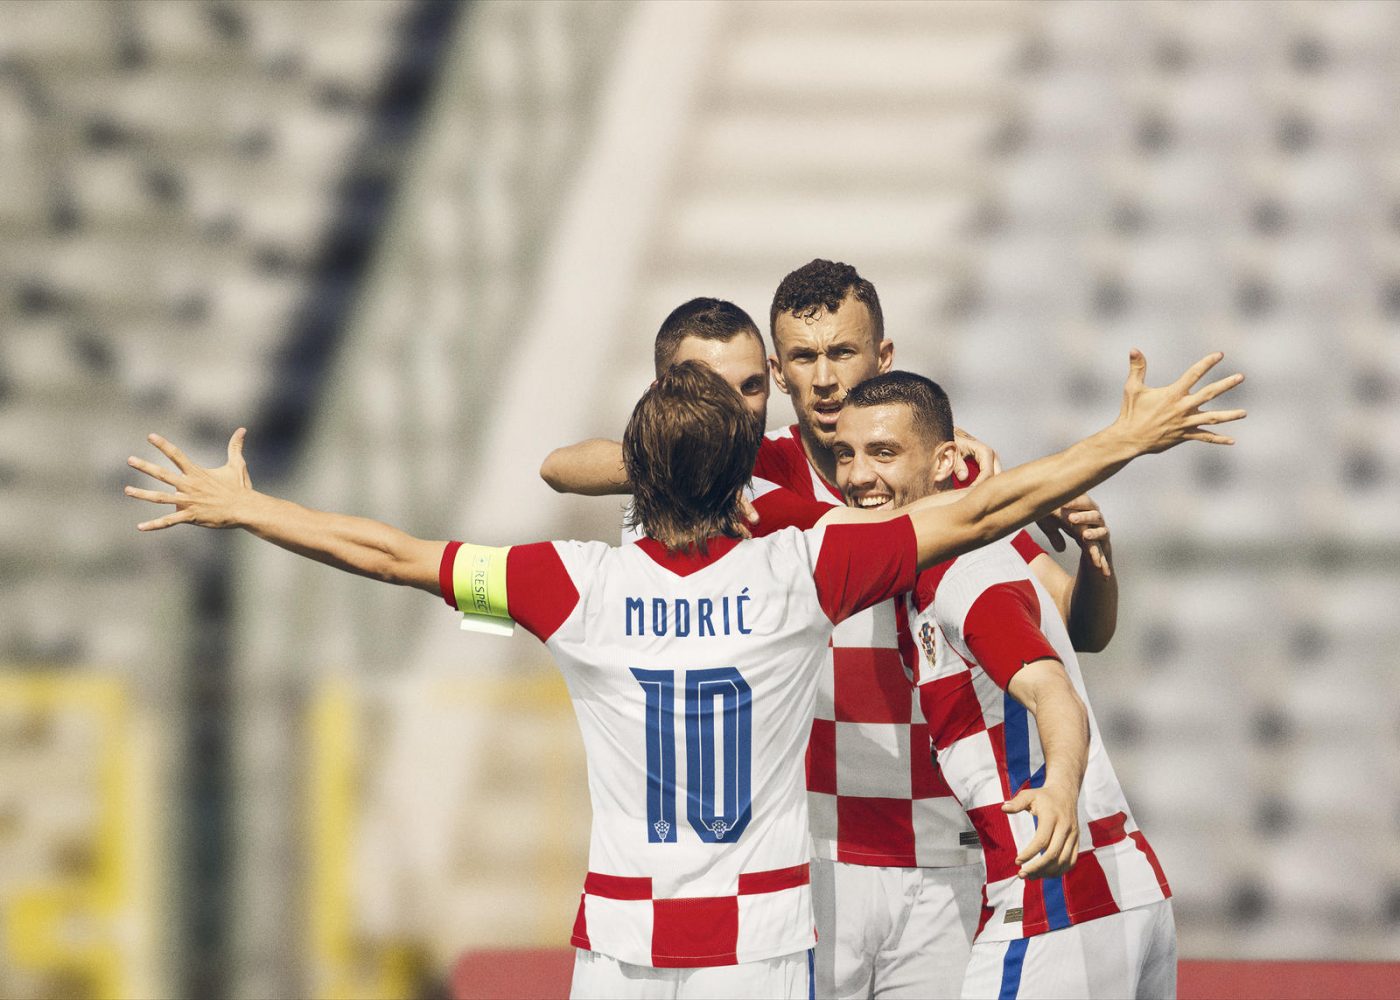 Nhận định Croatia vs Cộng hòa Séc 23h00 ngày 18/06/2021